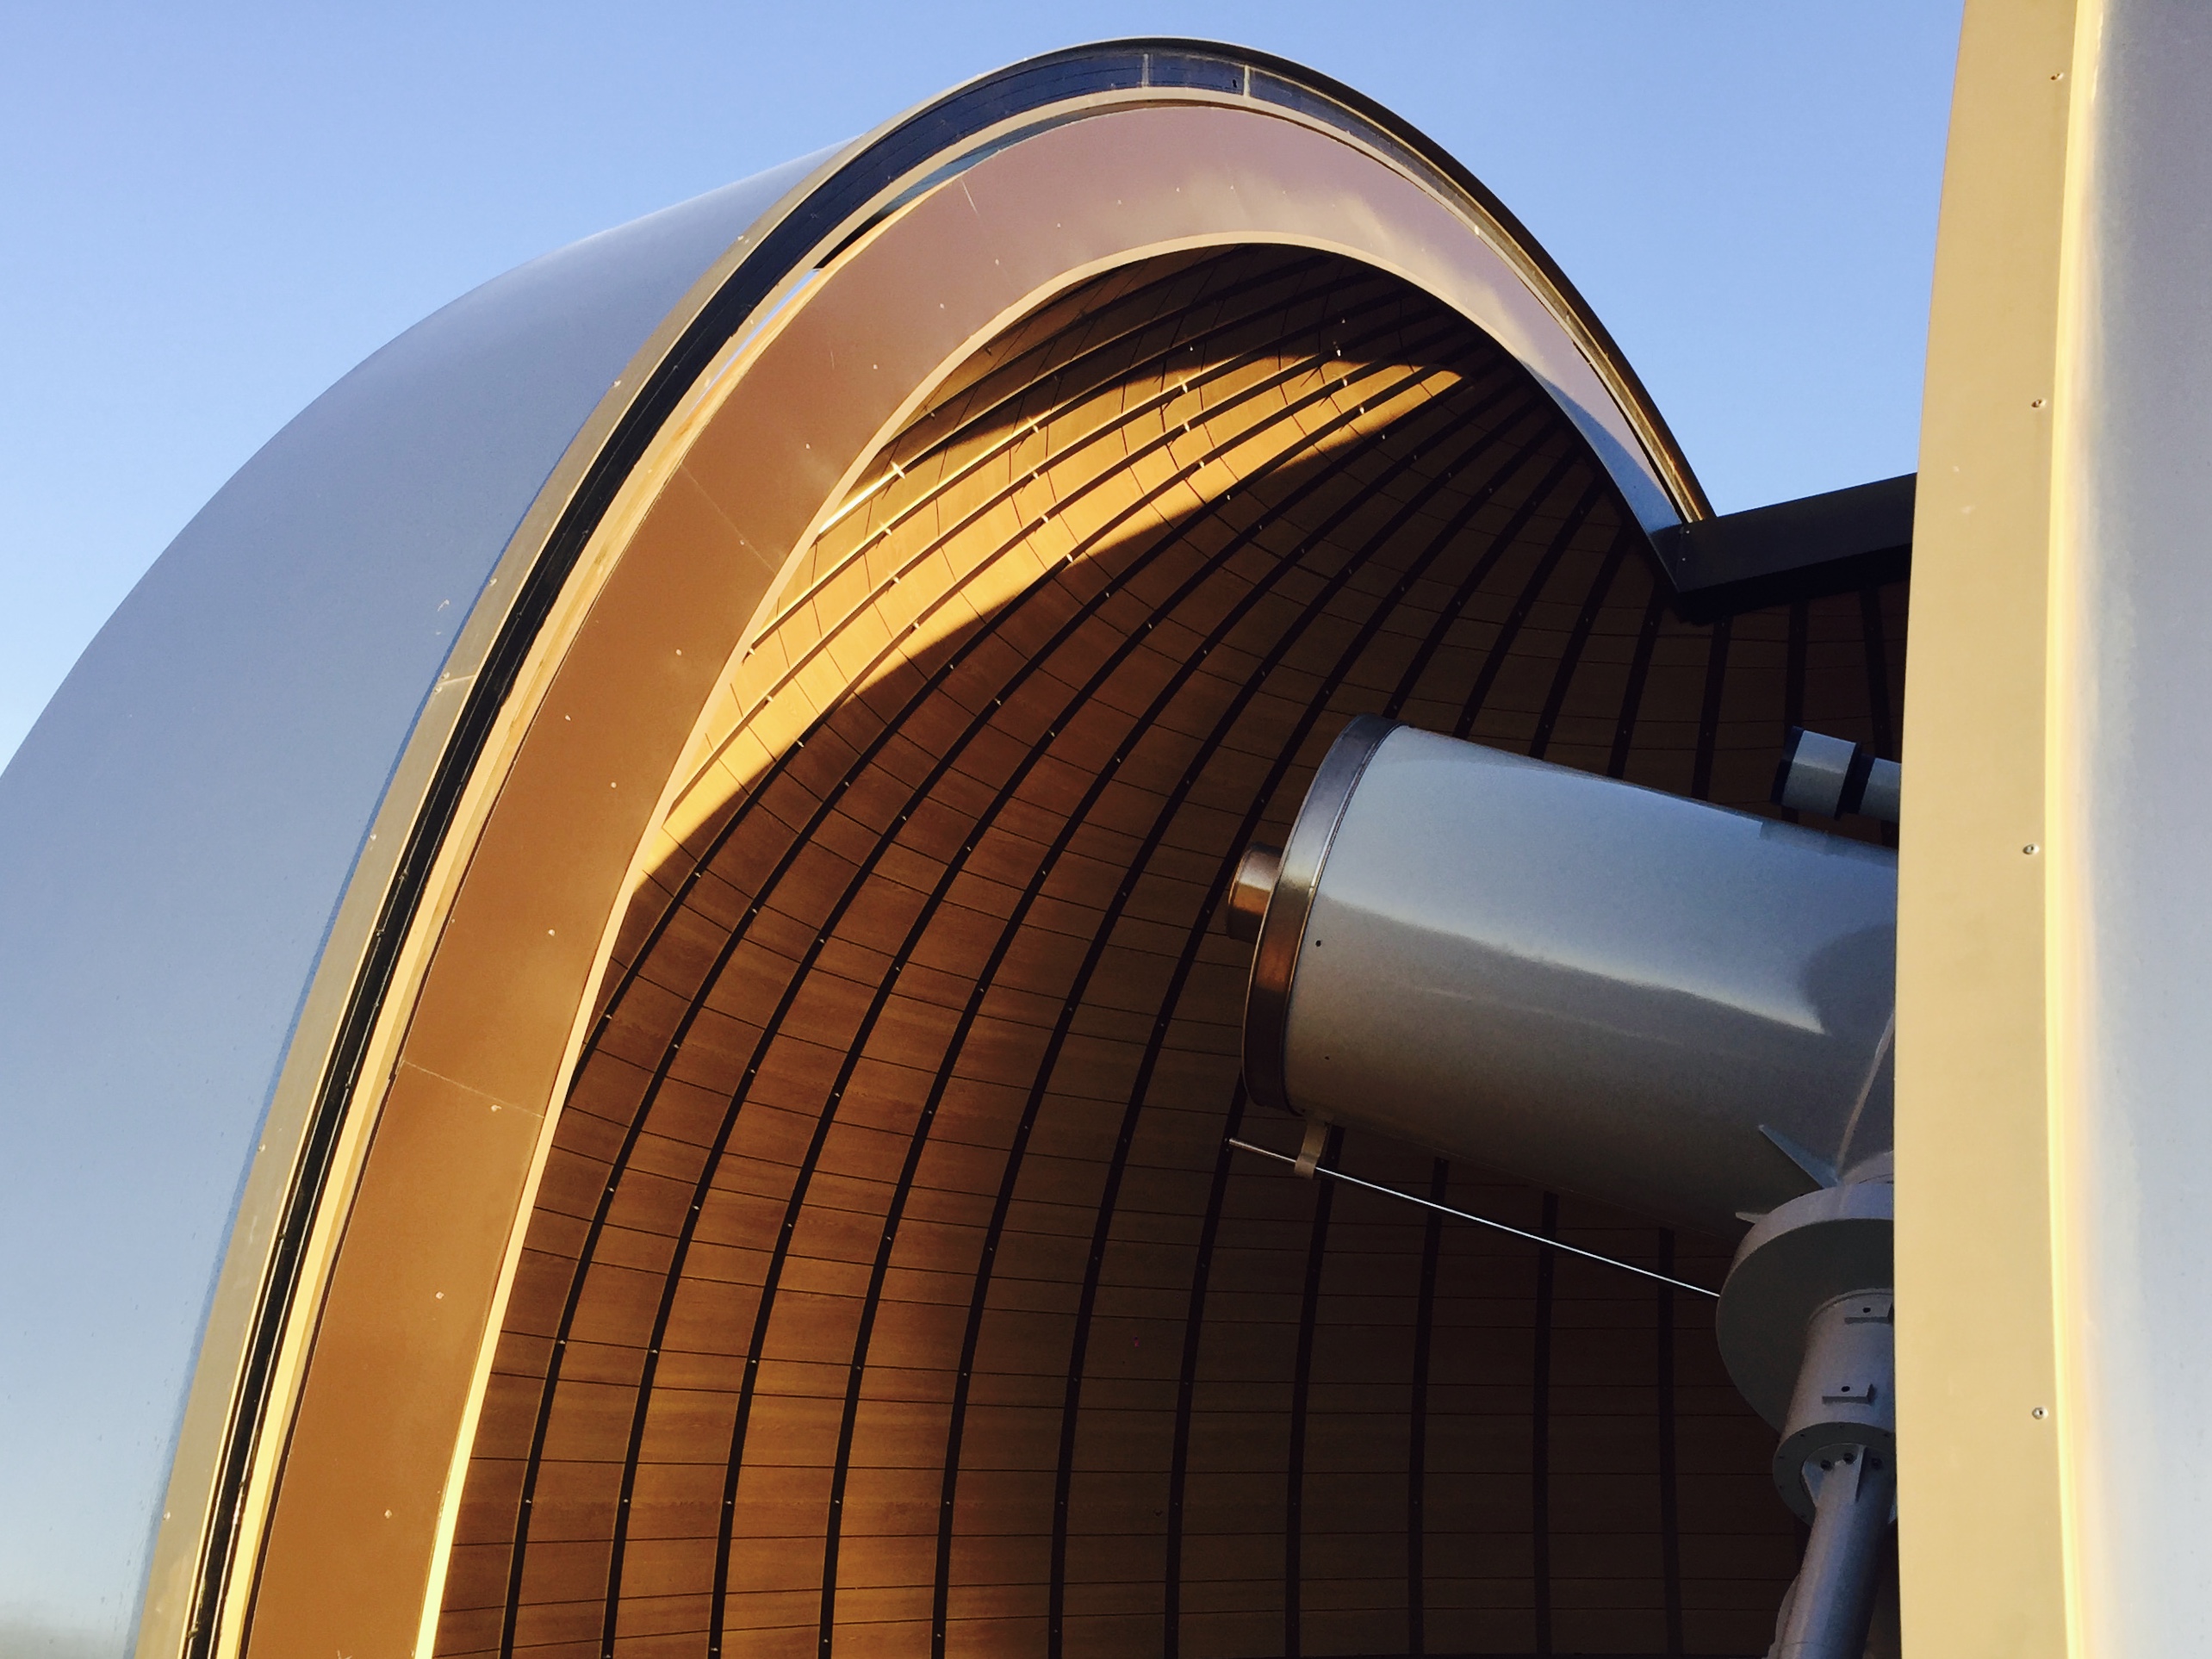 Il nuovo telescopio appena installato in cupola